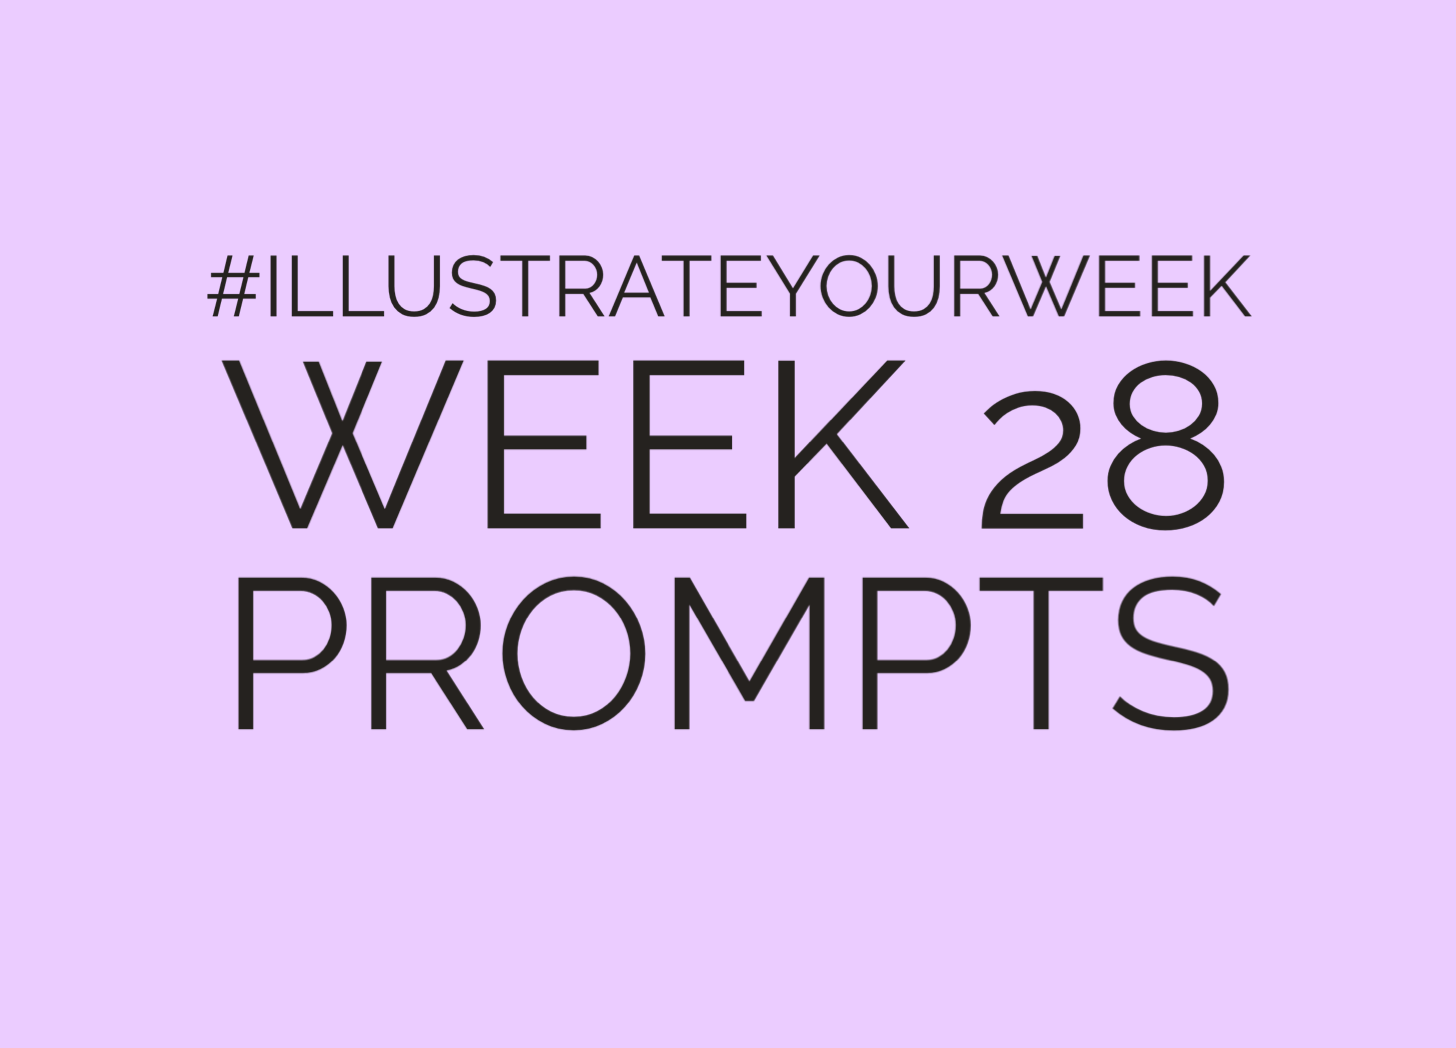 Week 28 Illustrate Your Week Prompts